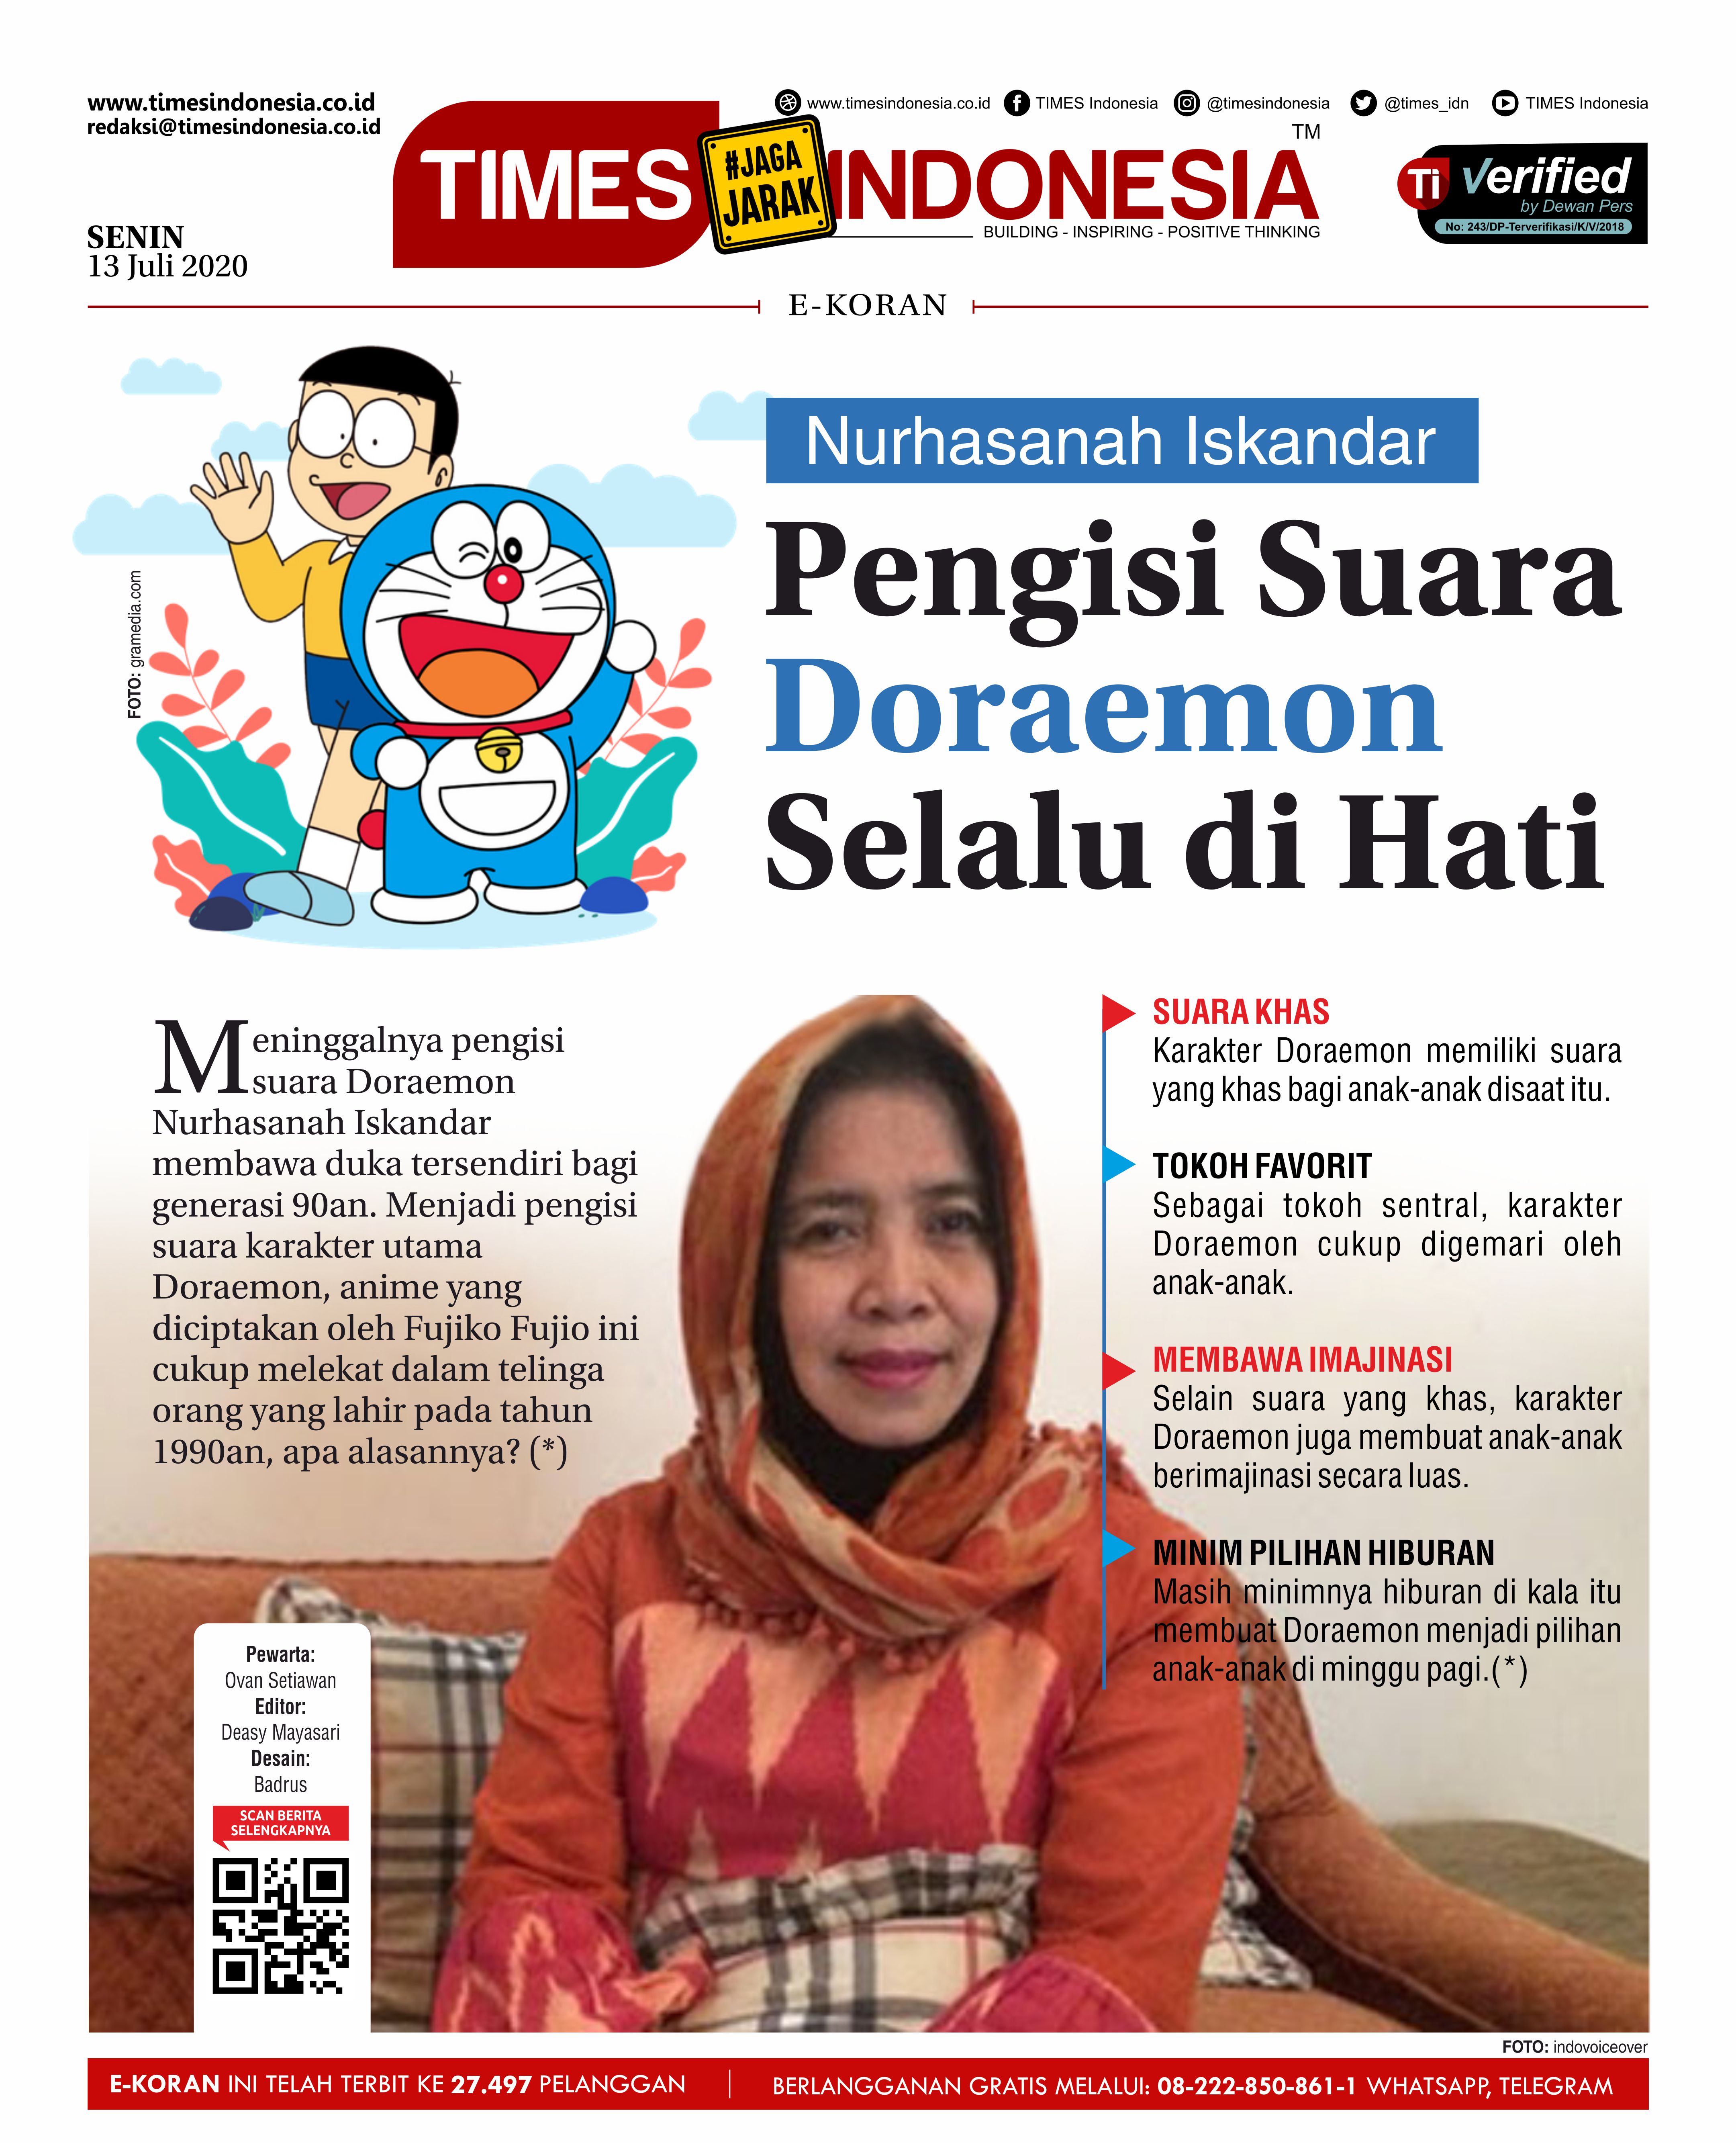 Edisi-SENIN-13-juli-2020-Nurhasanah-Iskandar.jpg